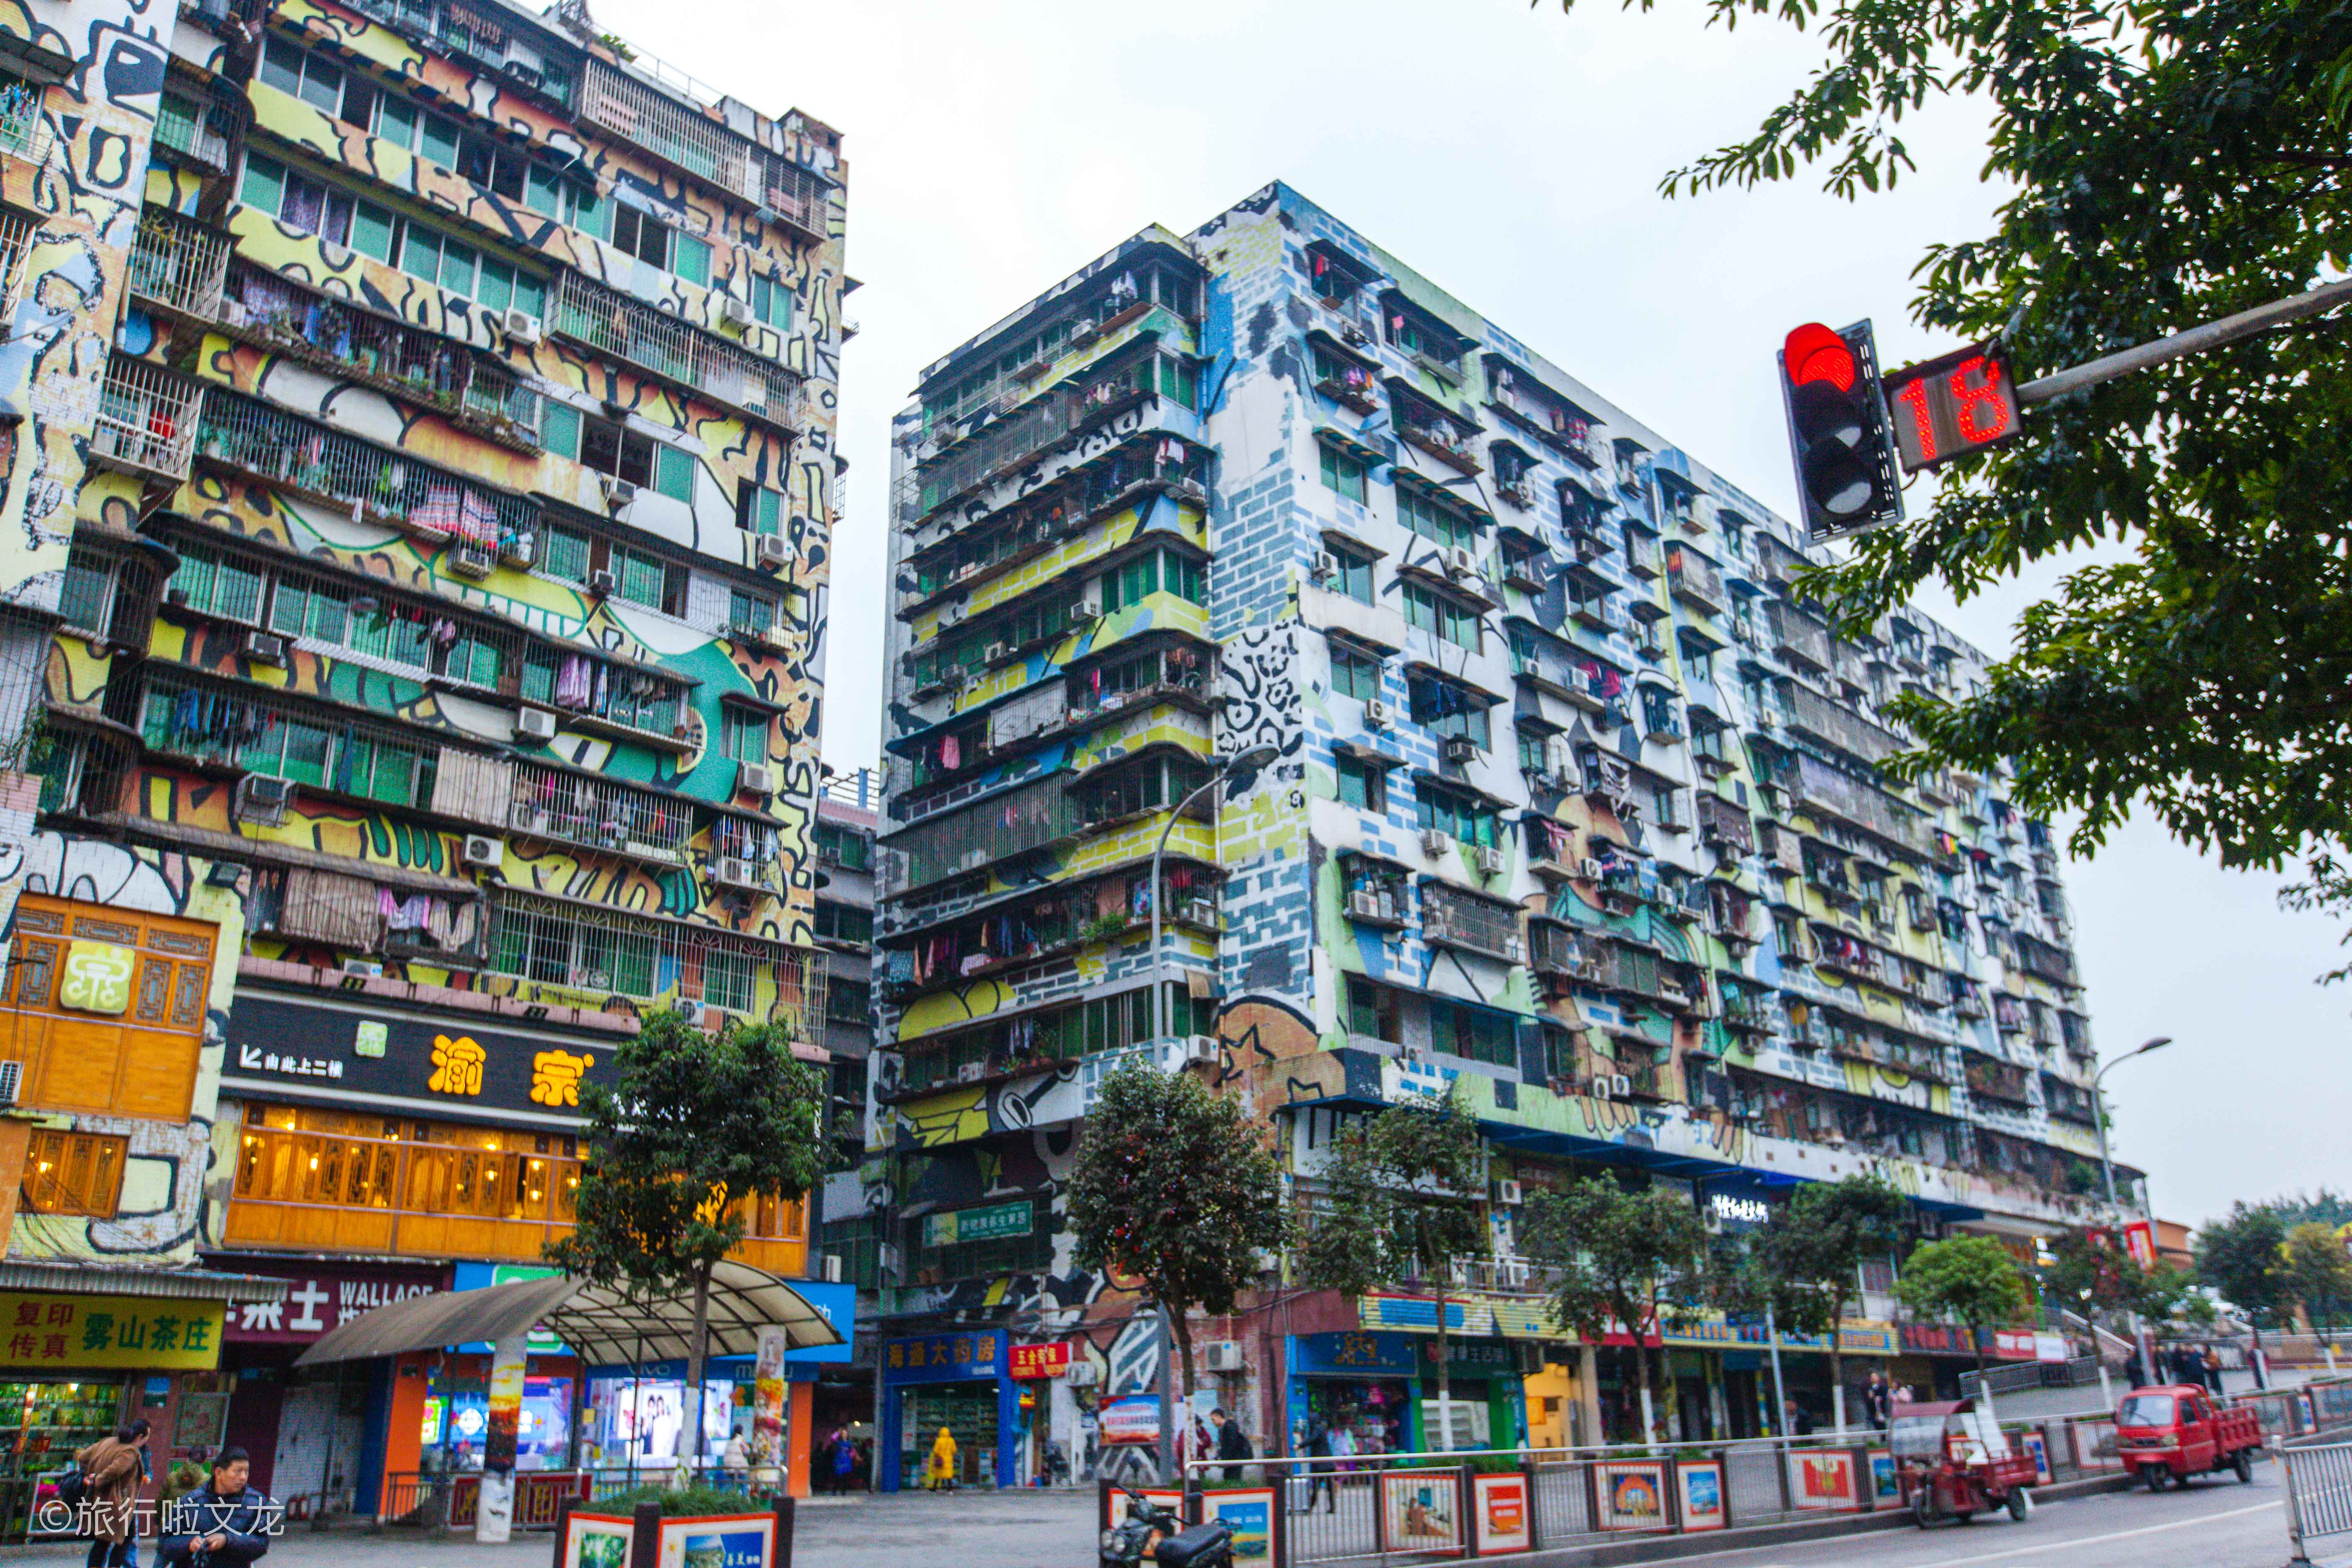 重庆有世界最长的涂鸦街,美女美景美街美食为重庆四大美